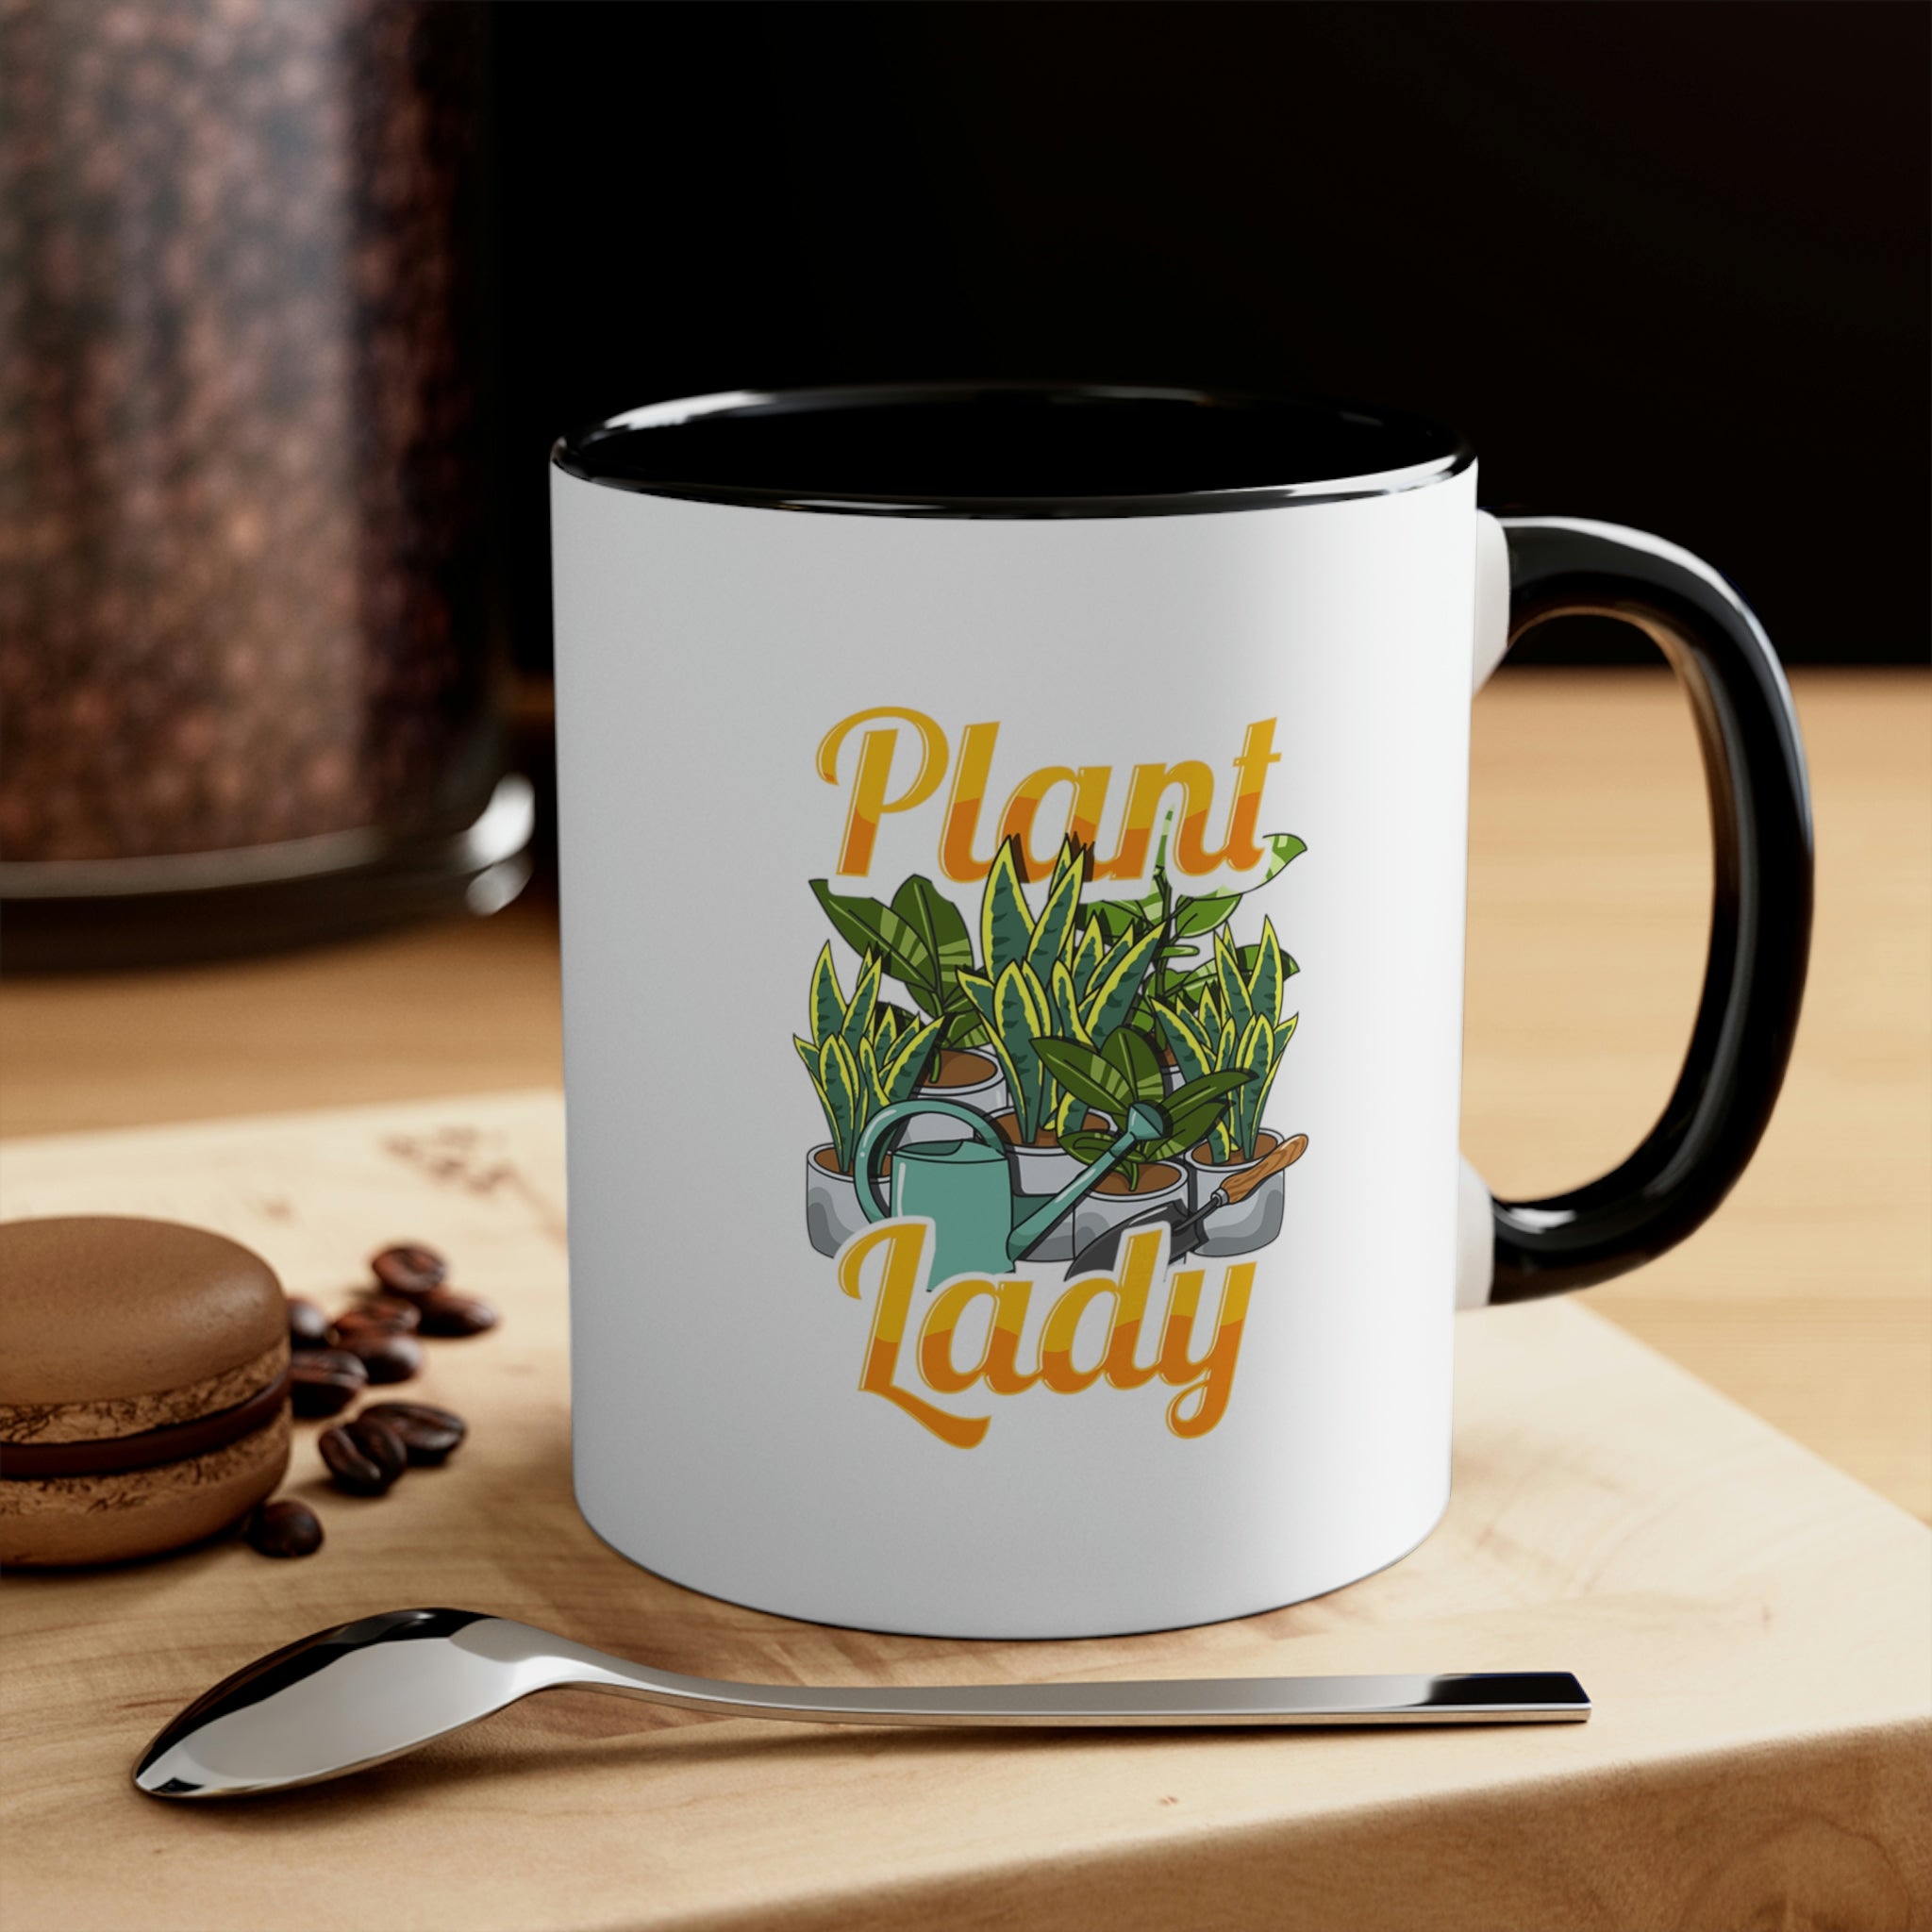 ""Plant Lady" Accent Coffee Mug, 11oz - SHOP LUV FARMS